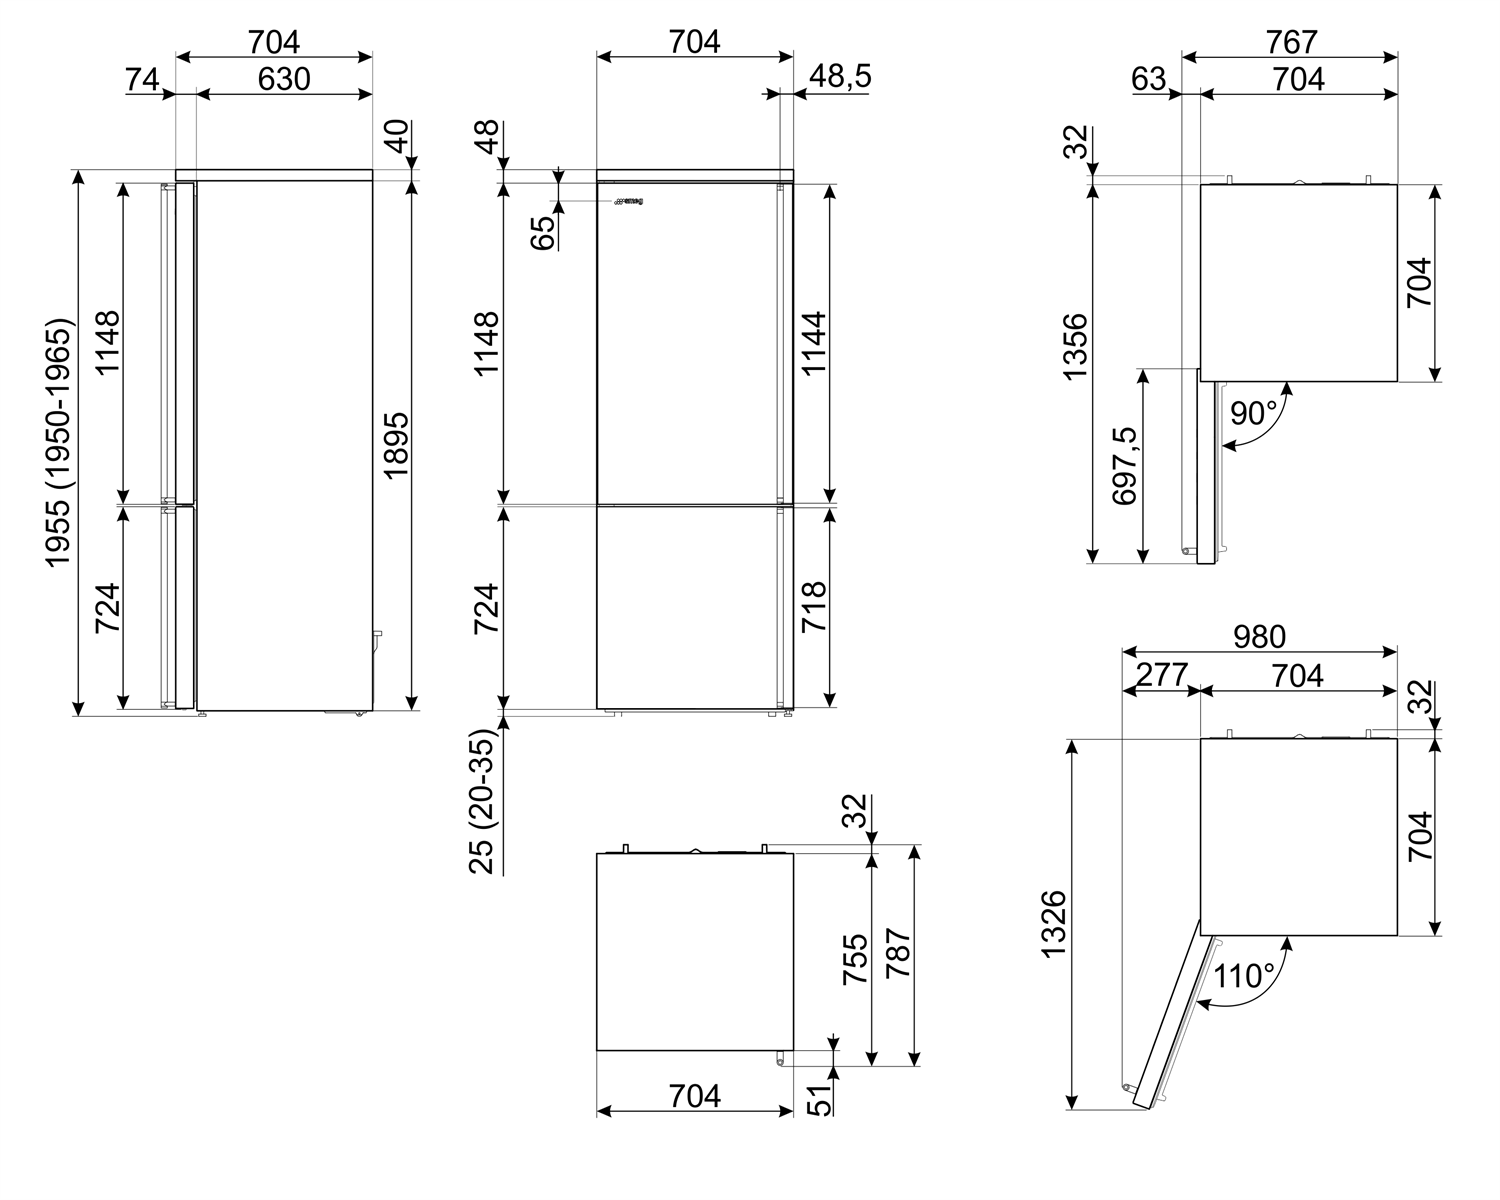 Maattekening SMEG koelkast rvs FA3905LX5